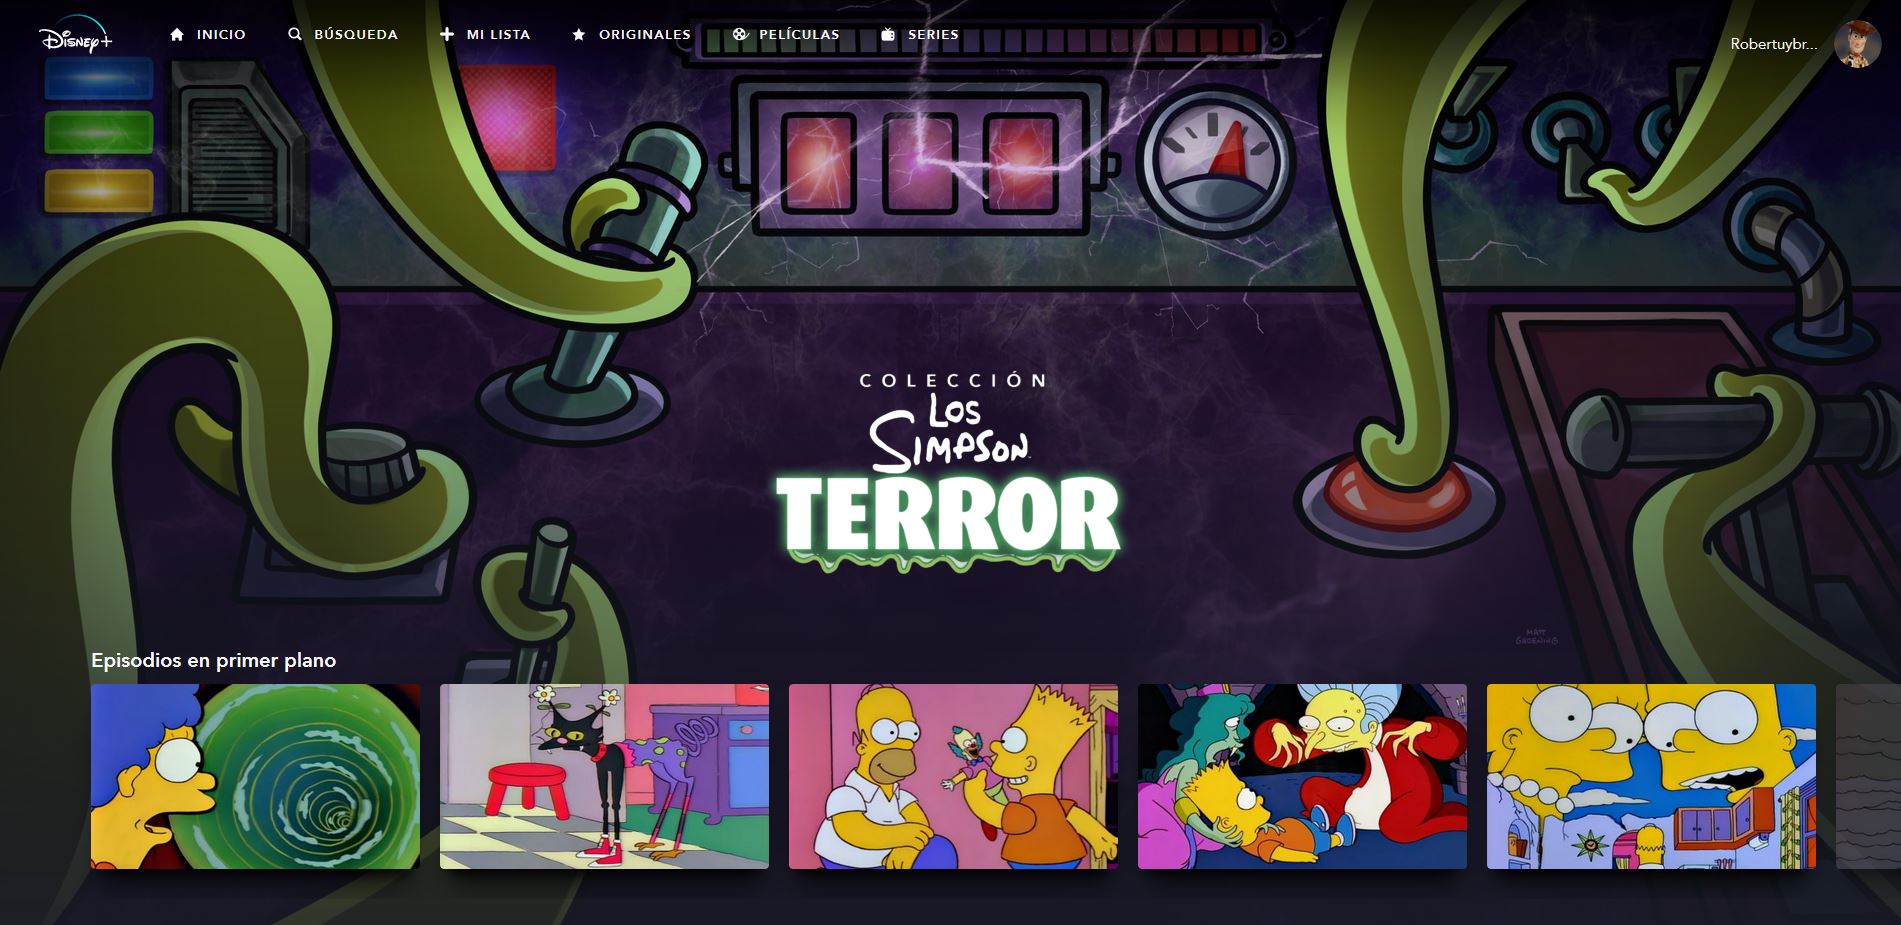 Disney+: Colección Los Simpson Terror